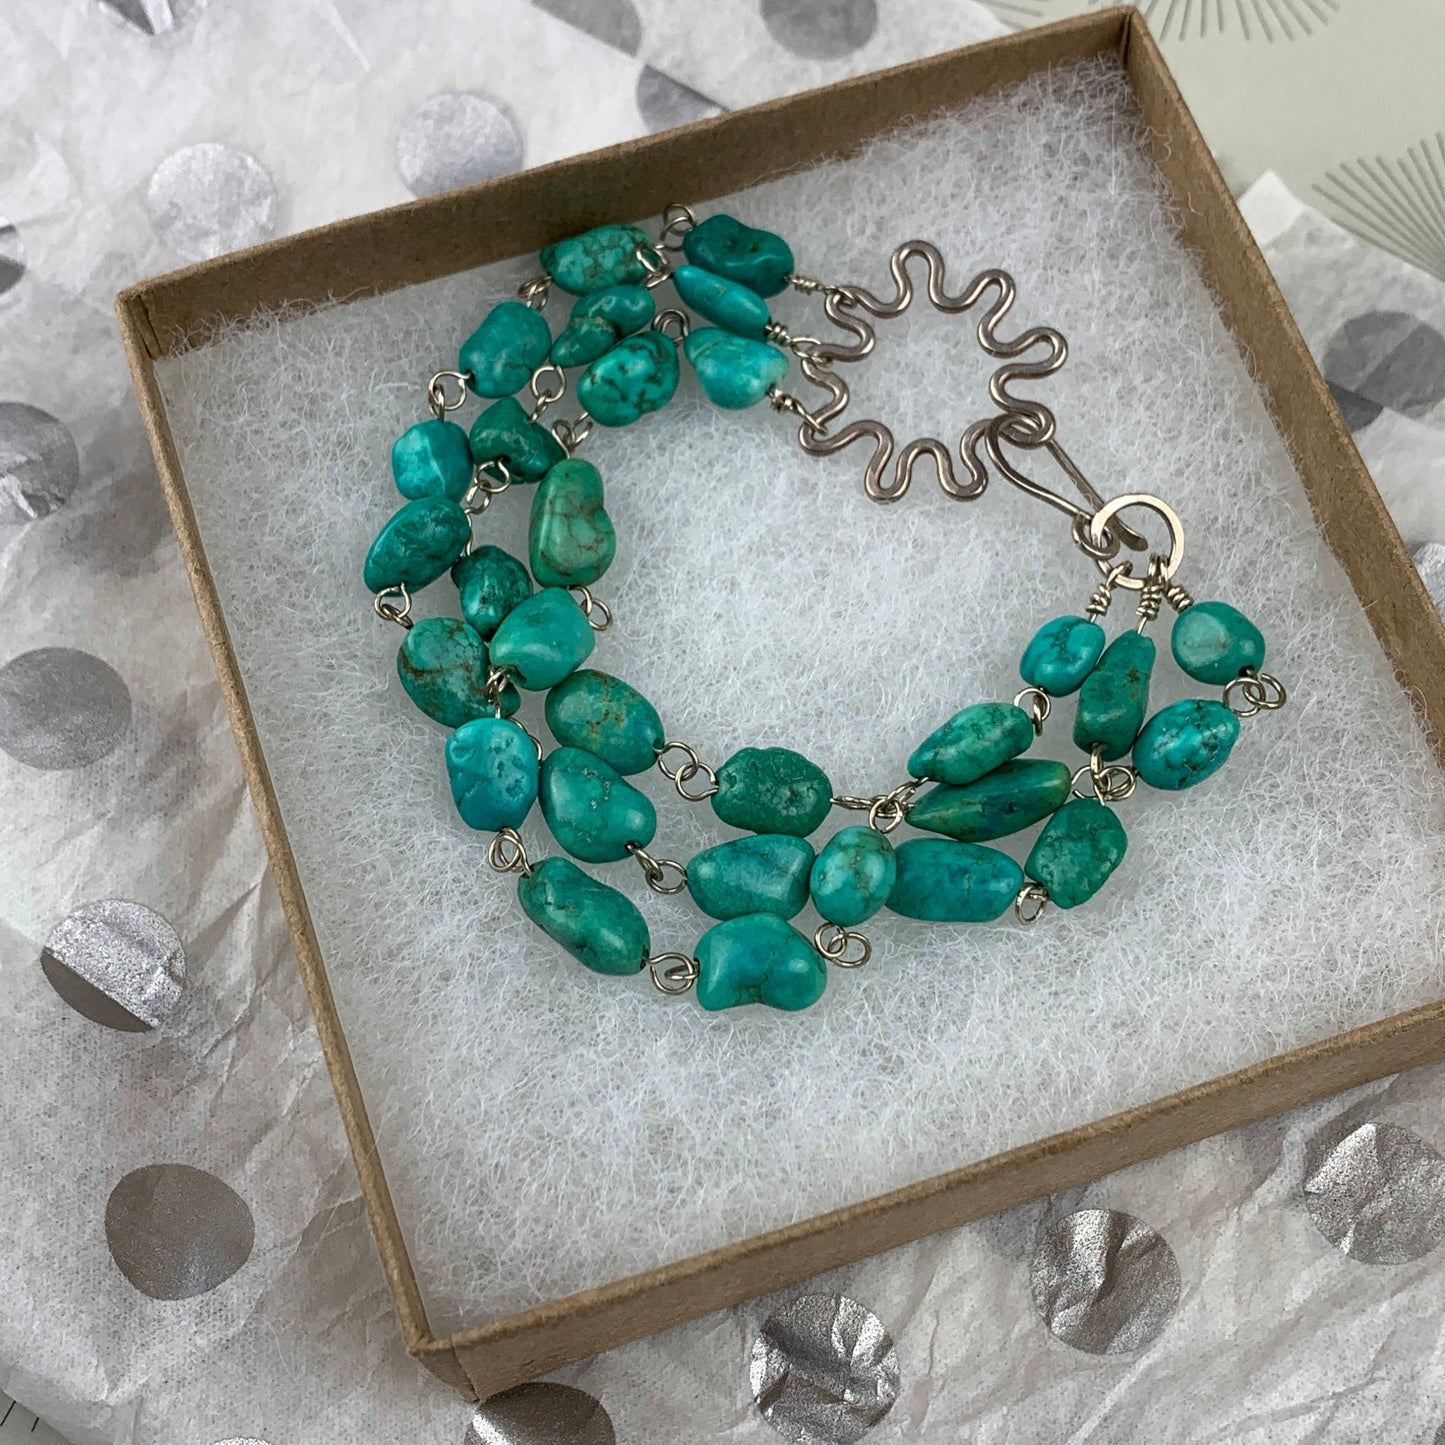 Turquoise statement bracelet - Multi strand turquoise beads - Boho gemstone jewelry for her - yoga - chakra balance